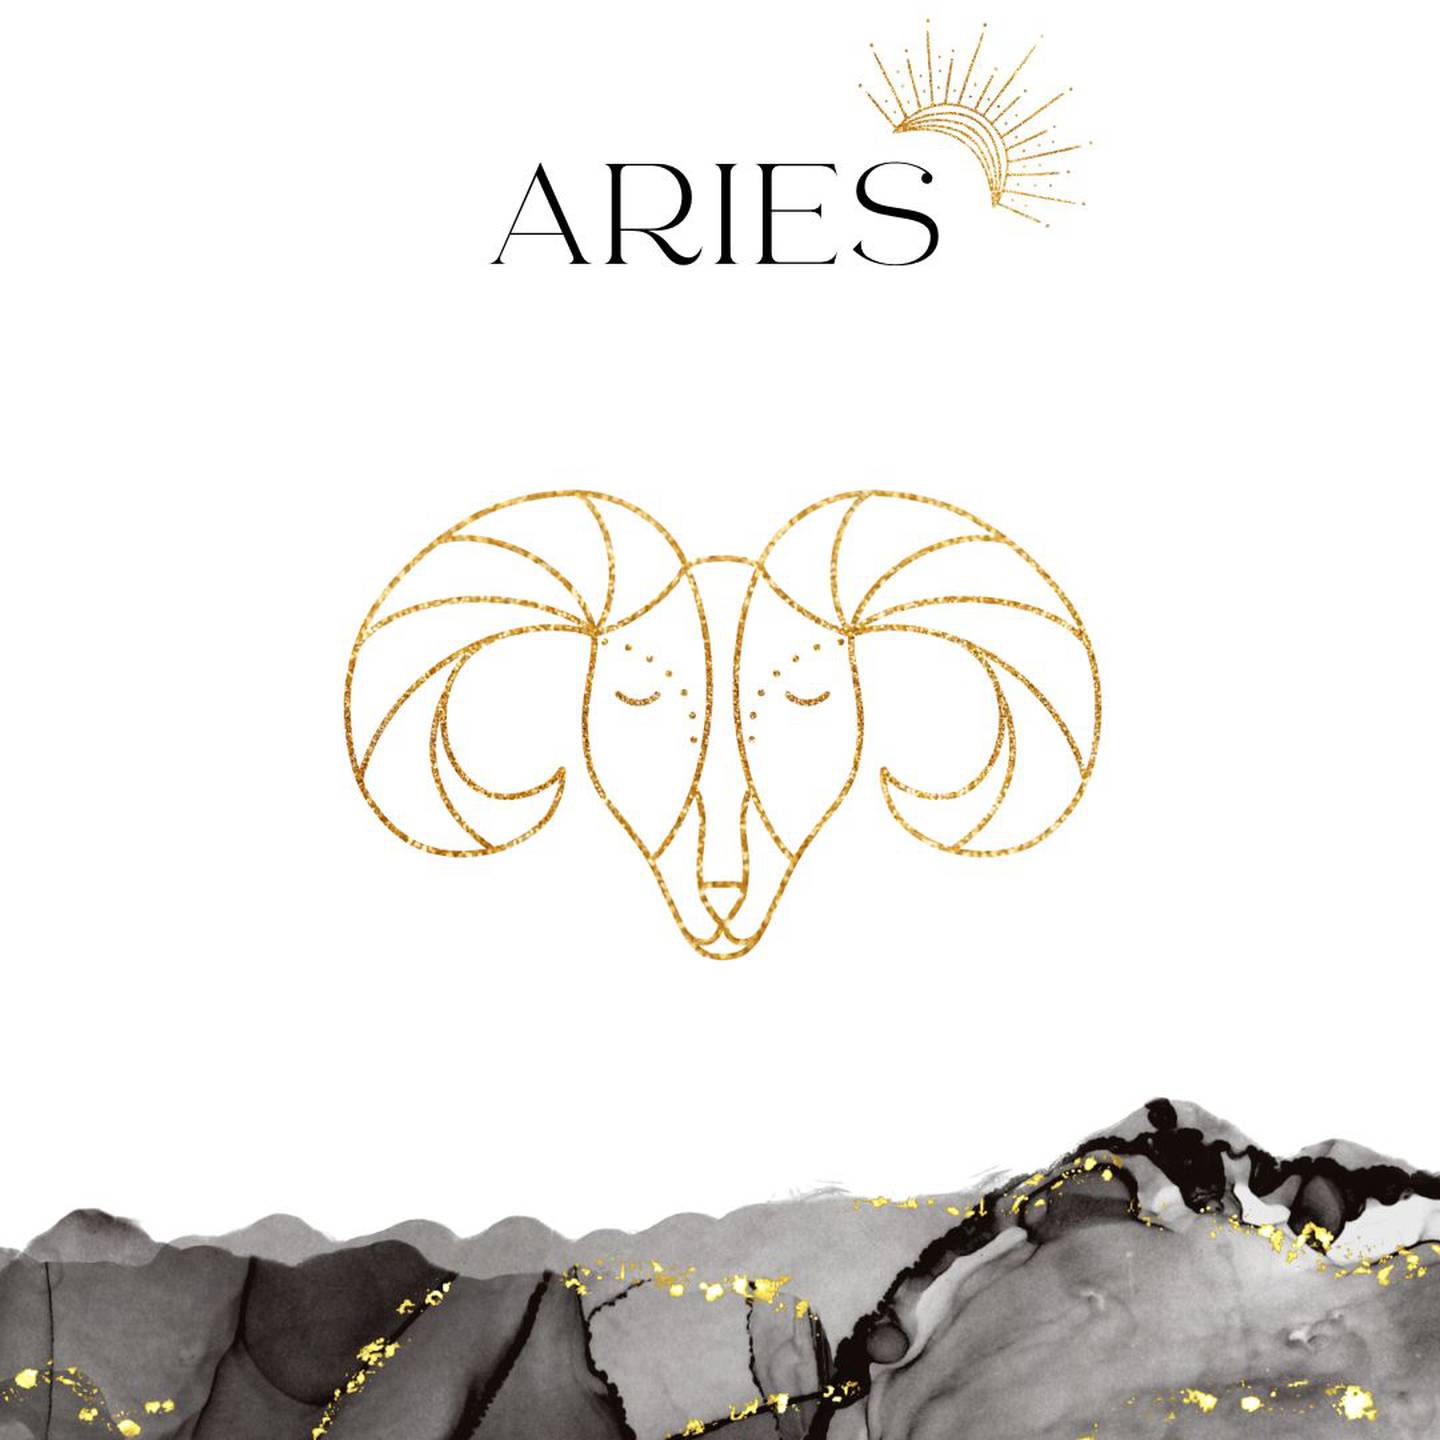 Palabra 'ARIES' en letras grandes y negras en el centro. Debajo, símbolo del signo de Aries: un carnero en dorado.